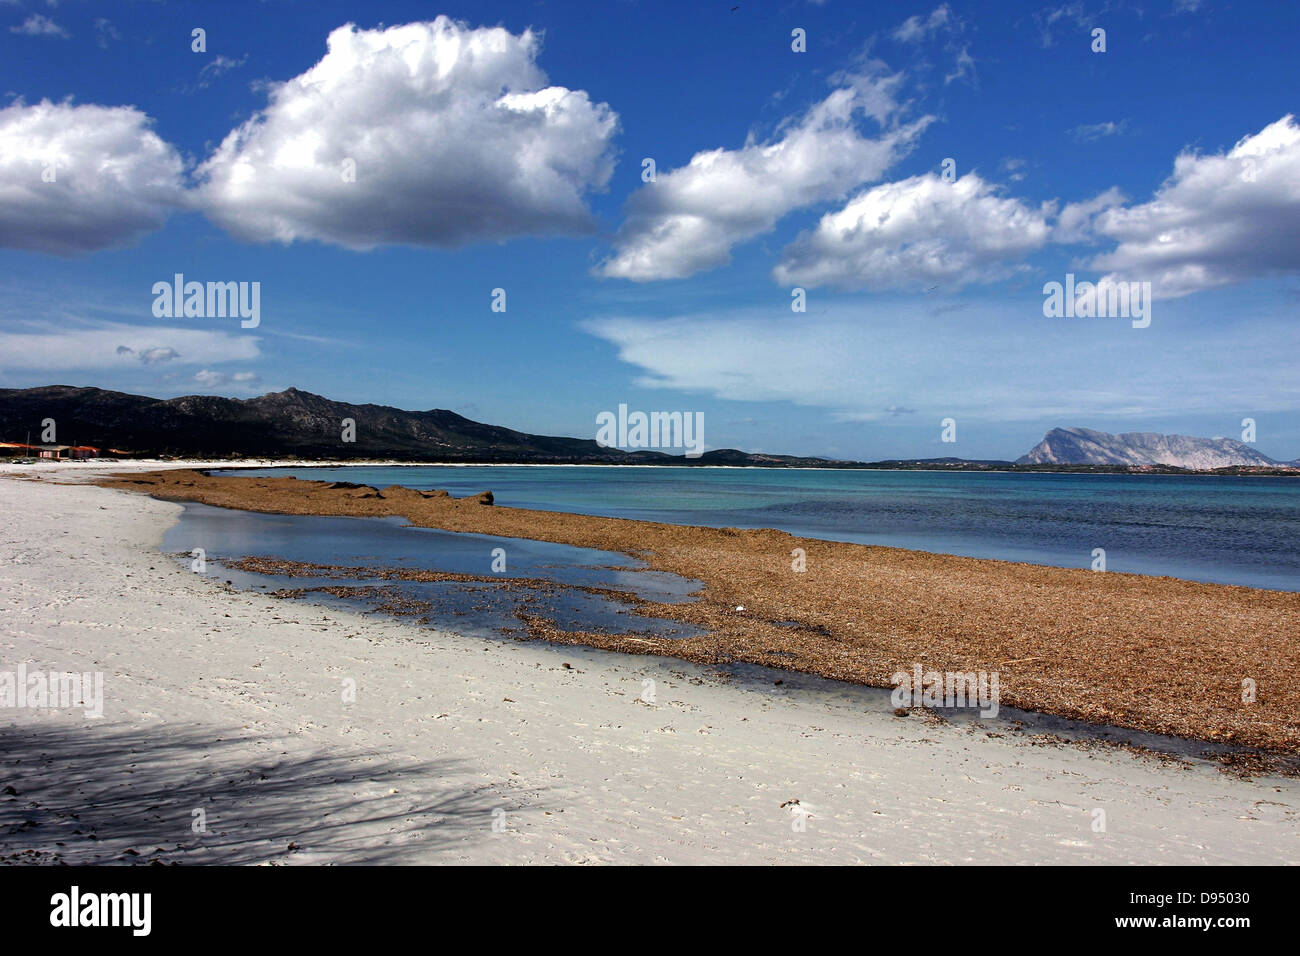 San teodoro  beach in winter Sardegna Italy by andrea quercioli Stock Photo